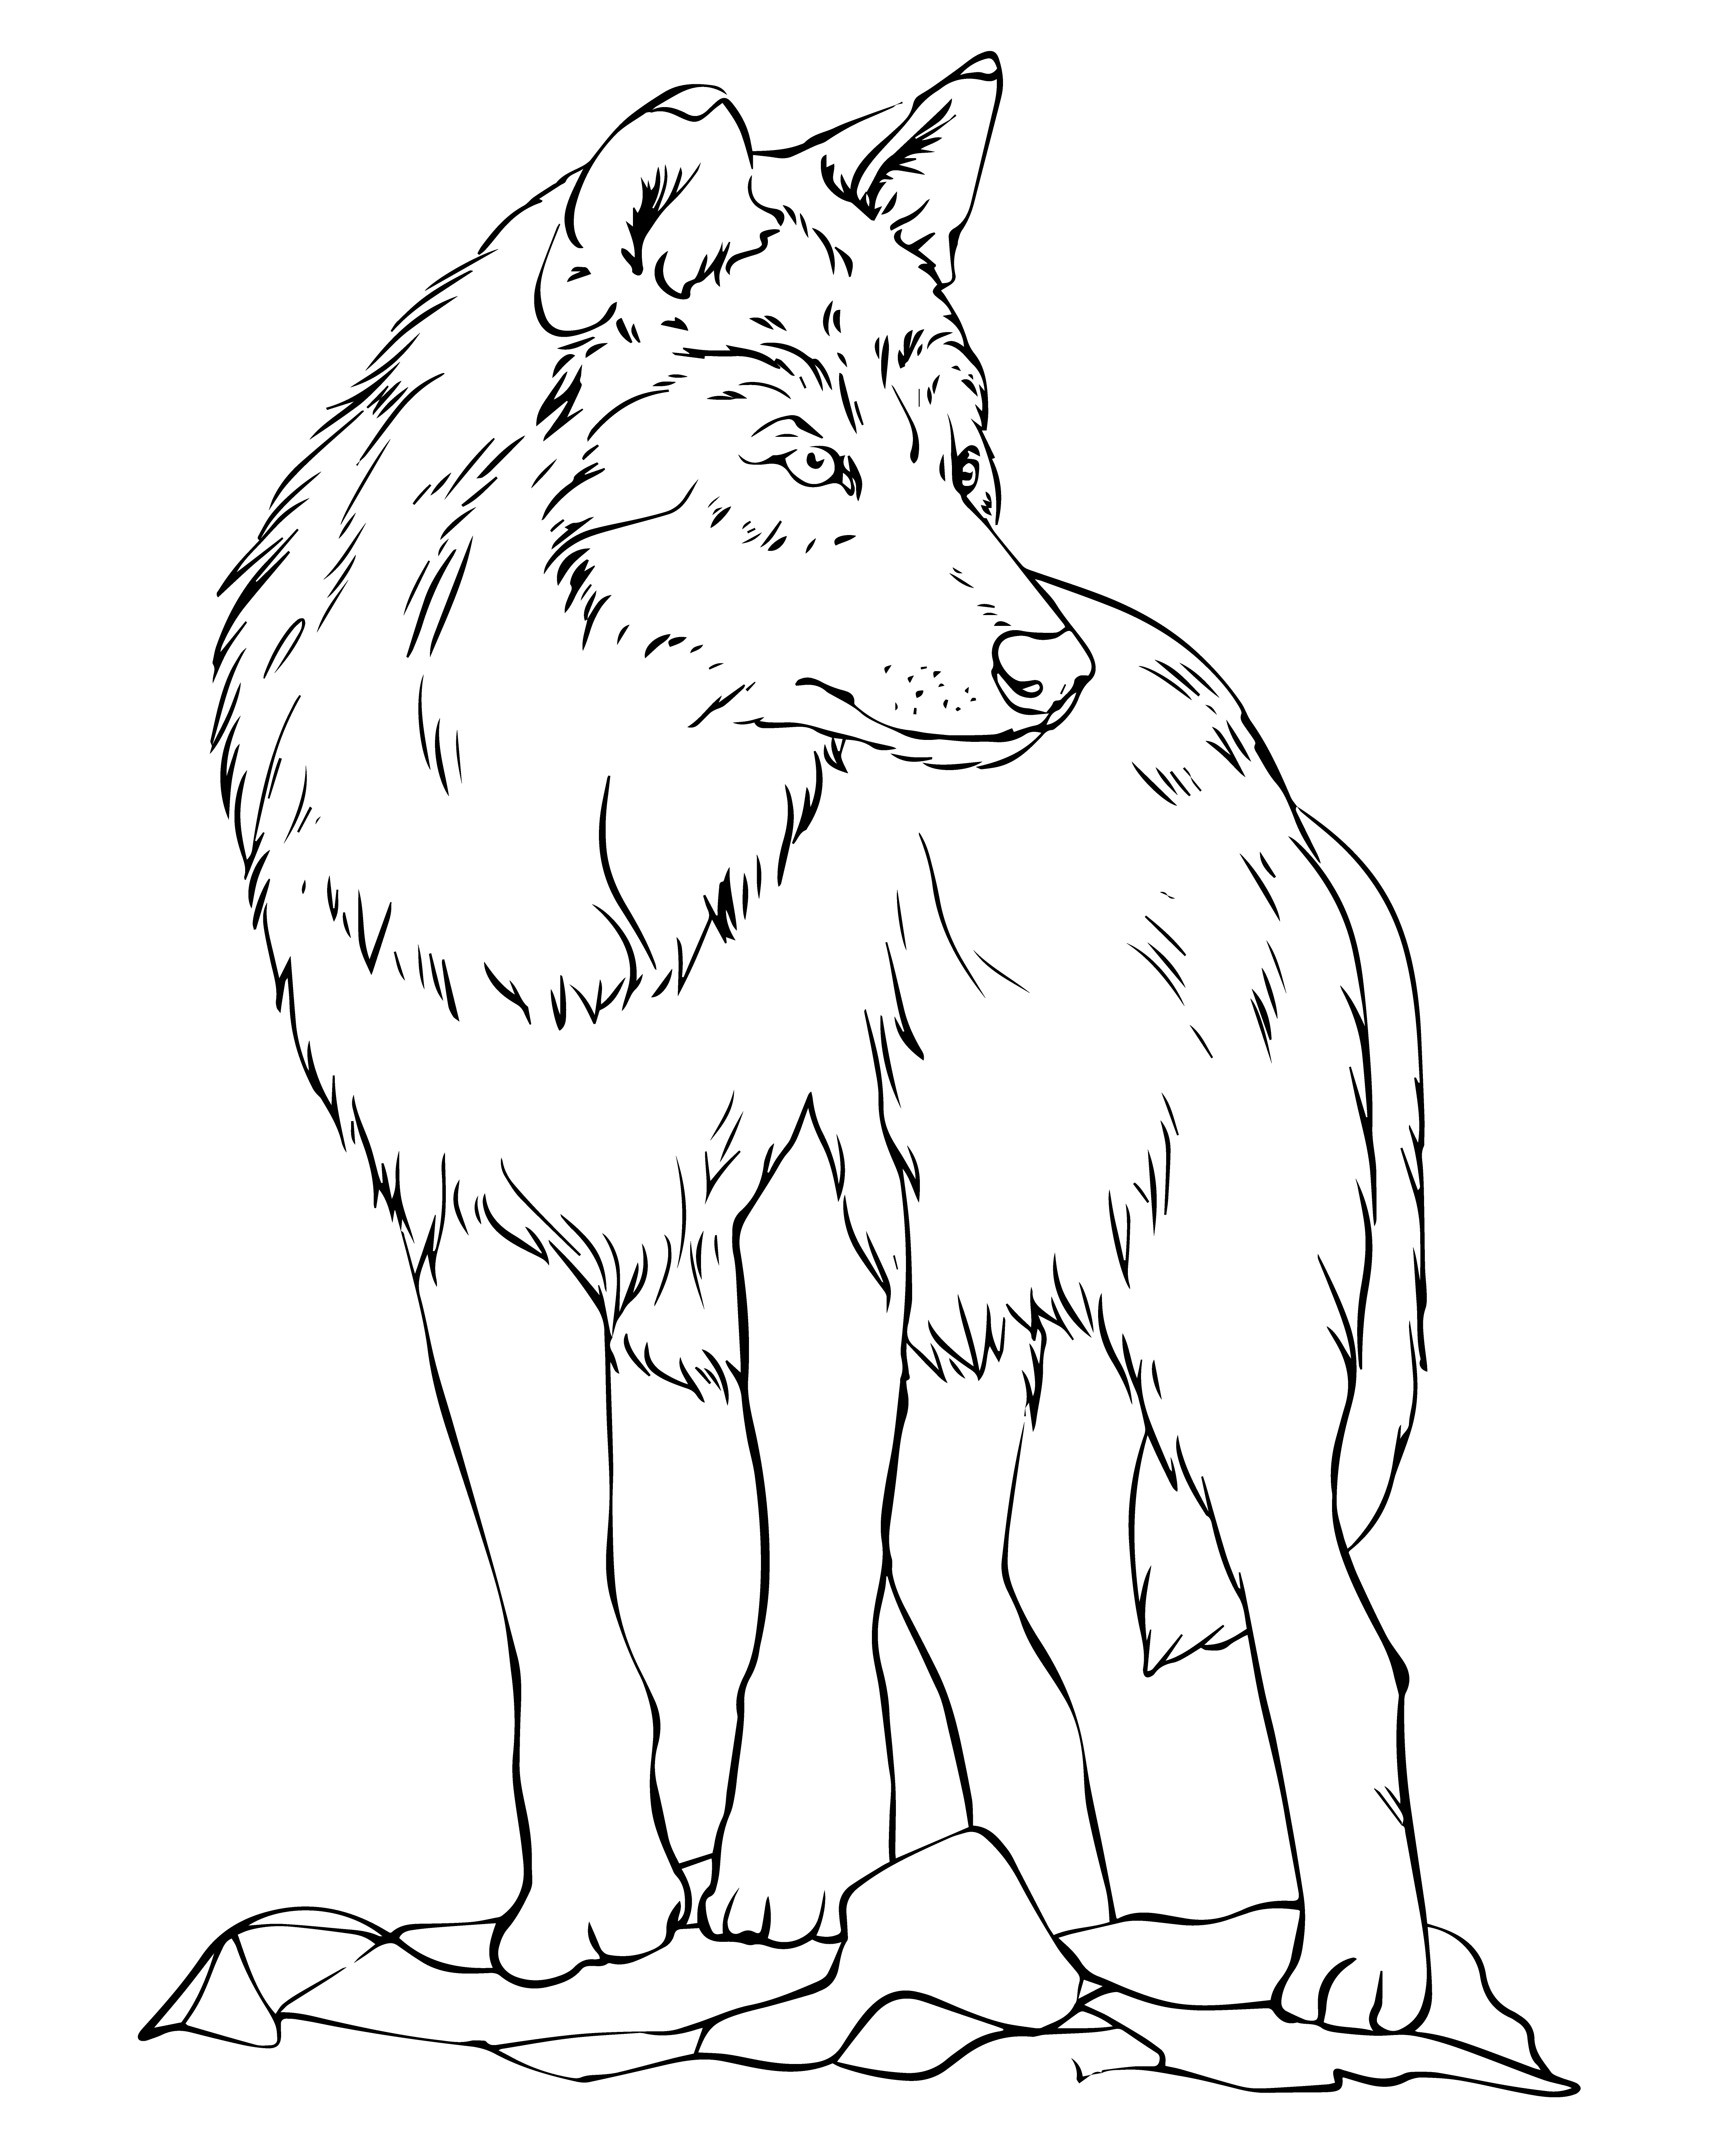 Раскраска реалистичный волк смотрит в сторону формата А4 в высоком качестве